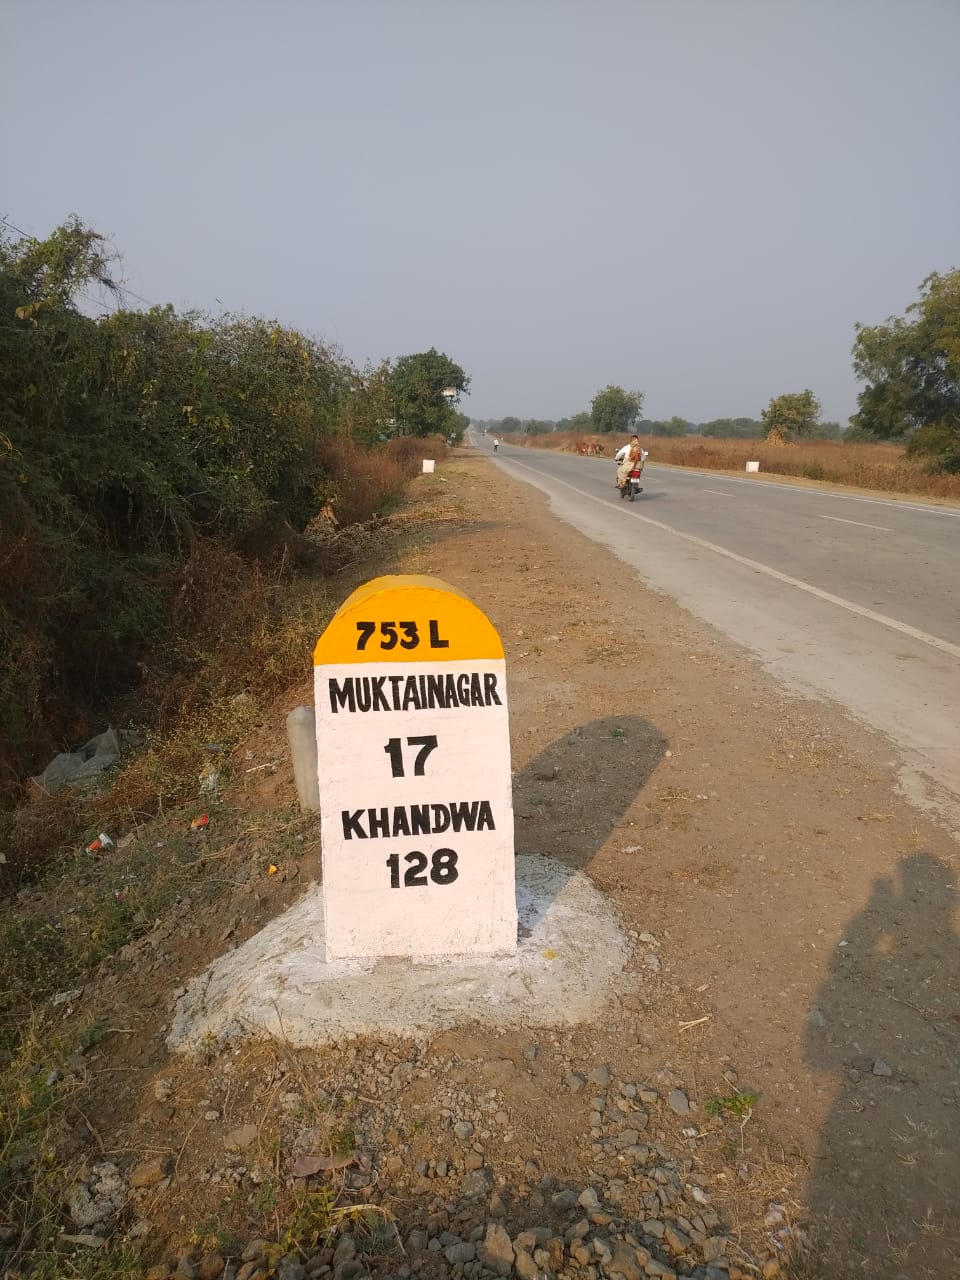 राजमार्ग नं 753 L का अनूठा निर्माण, ठेकेदार ने अप्रोच वॉल में बचाए लाखों रुपए, बड़े दिशादर्शक बोर्ड गायब, बिना मंदिर बनाए काट दी सड़क | New India Times